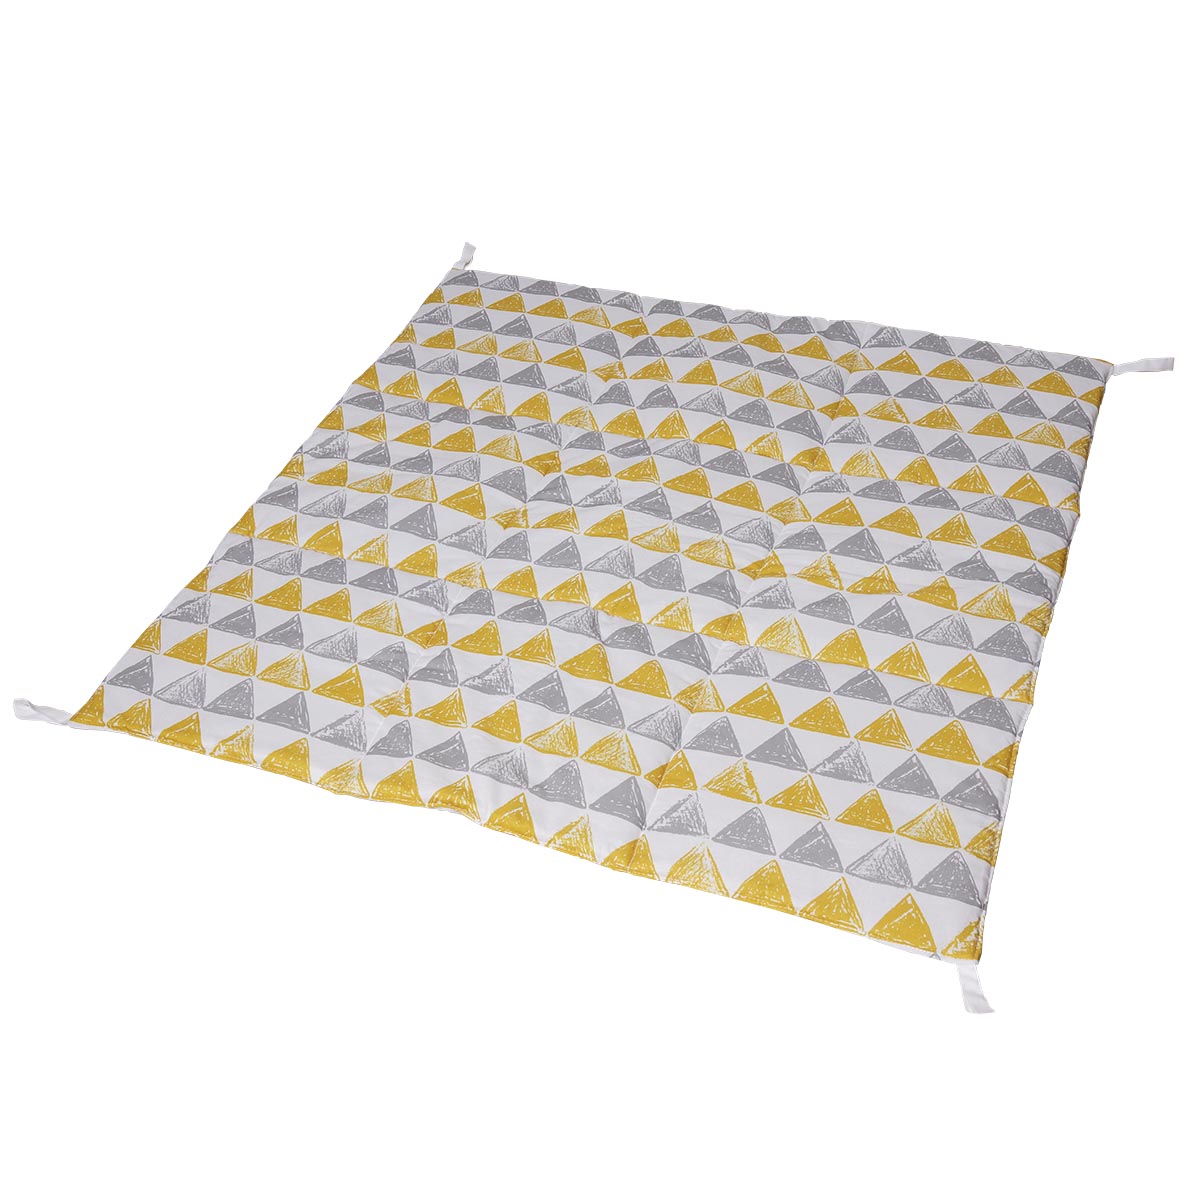 Игровой стеганый коврик для вигвама VamVigvam Triangles vv020113